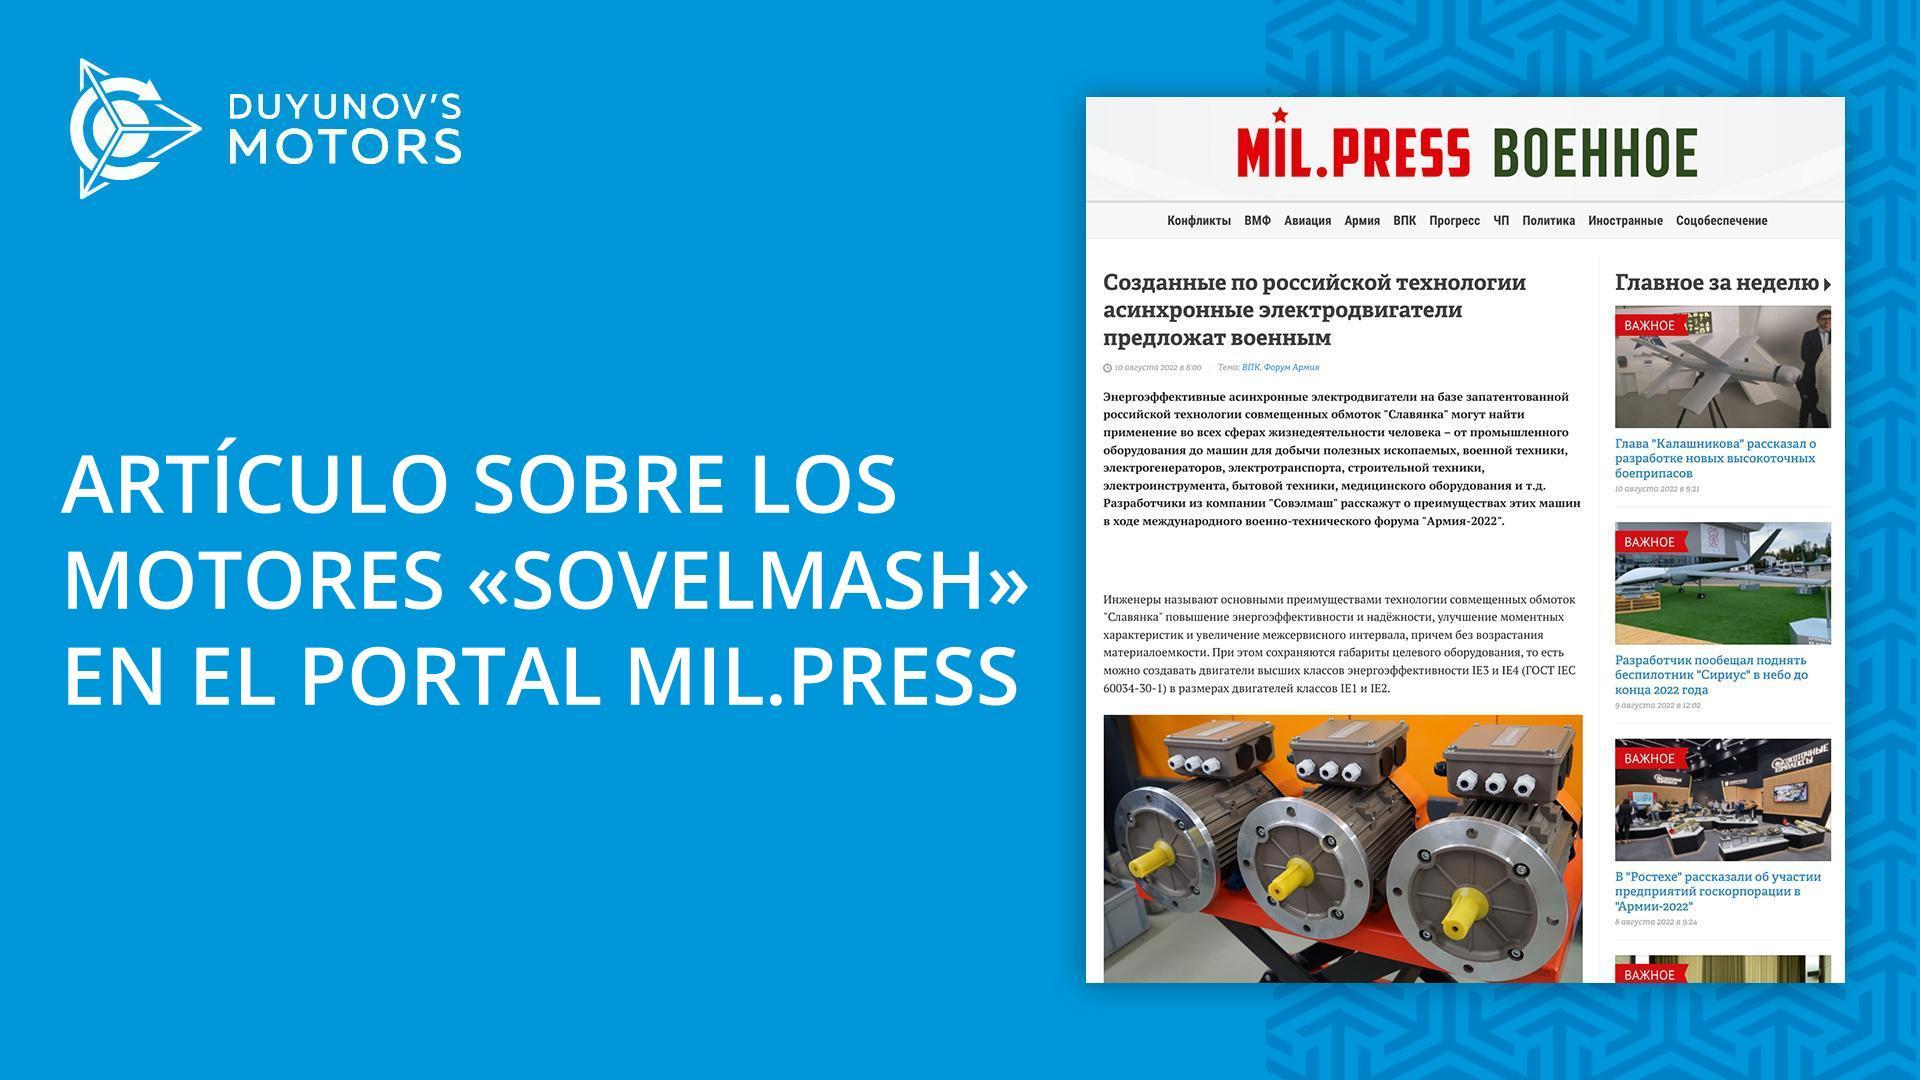 Nueva publicación sobre los motores "Sovelmash" en la agencia de noticias Mil.Press Militar